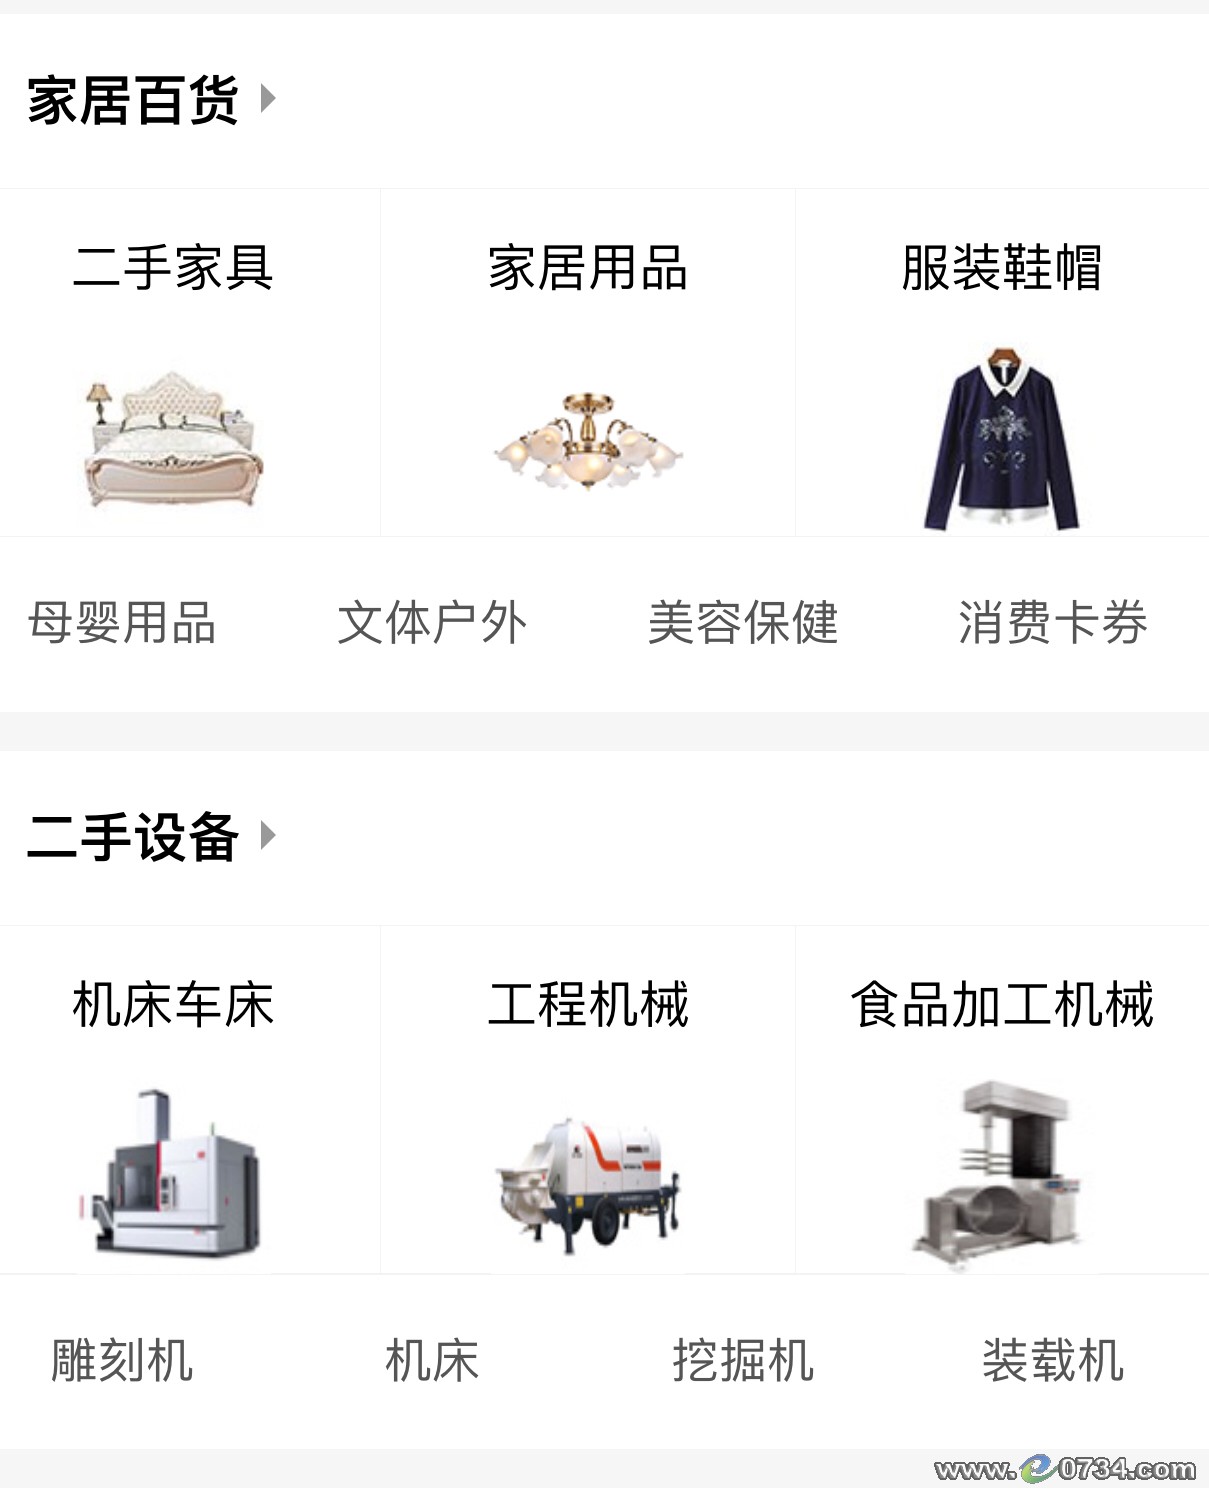 中国衡阳新闻网 www.e0734.com